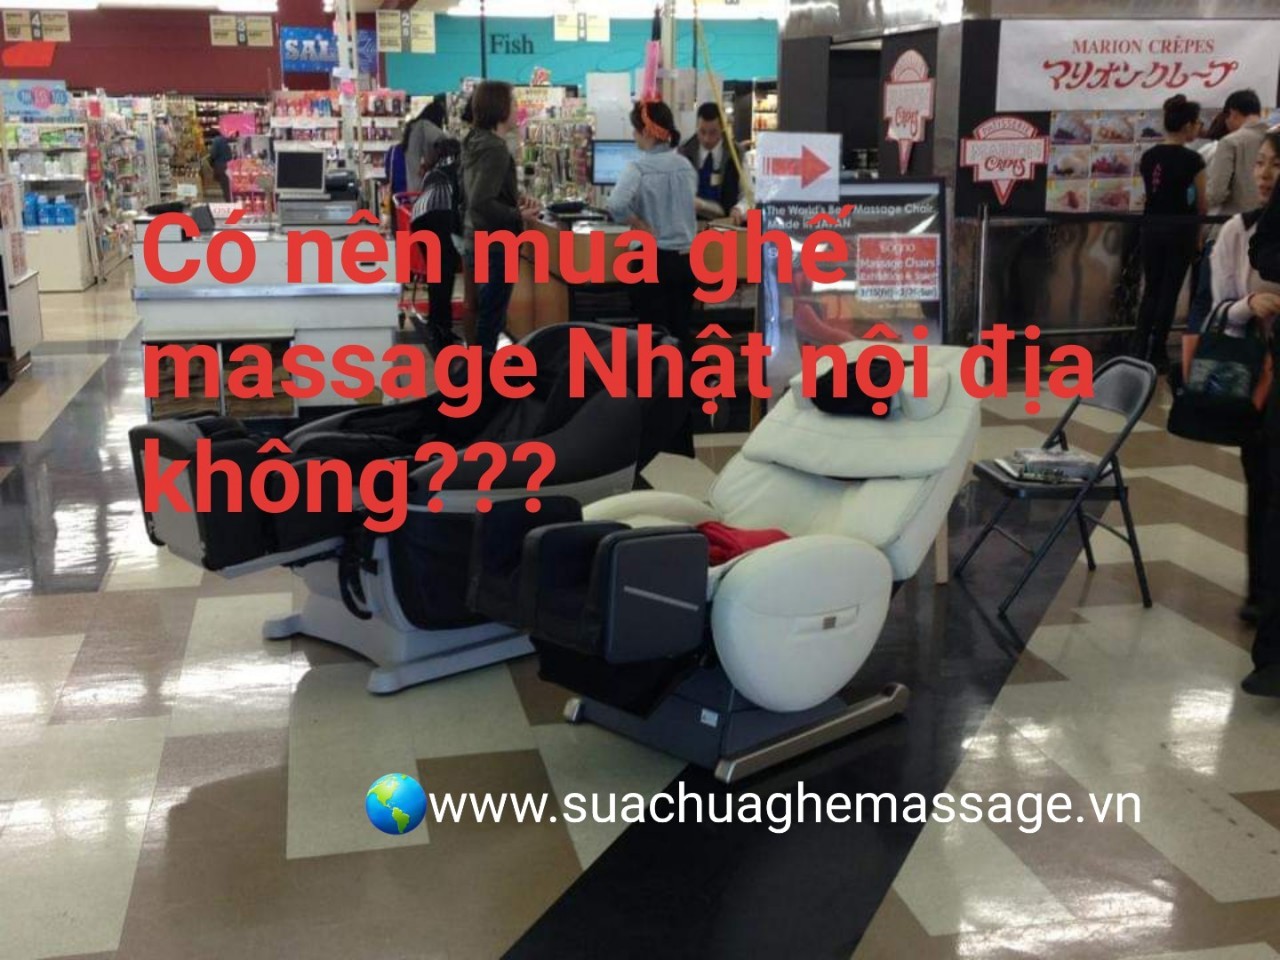 co_nen_mua_ghe_massage_nhat_noi_dia_khong